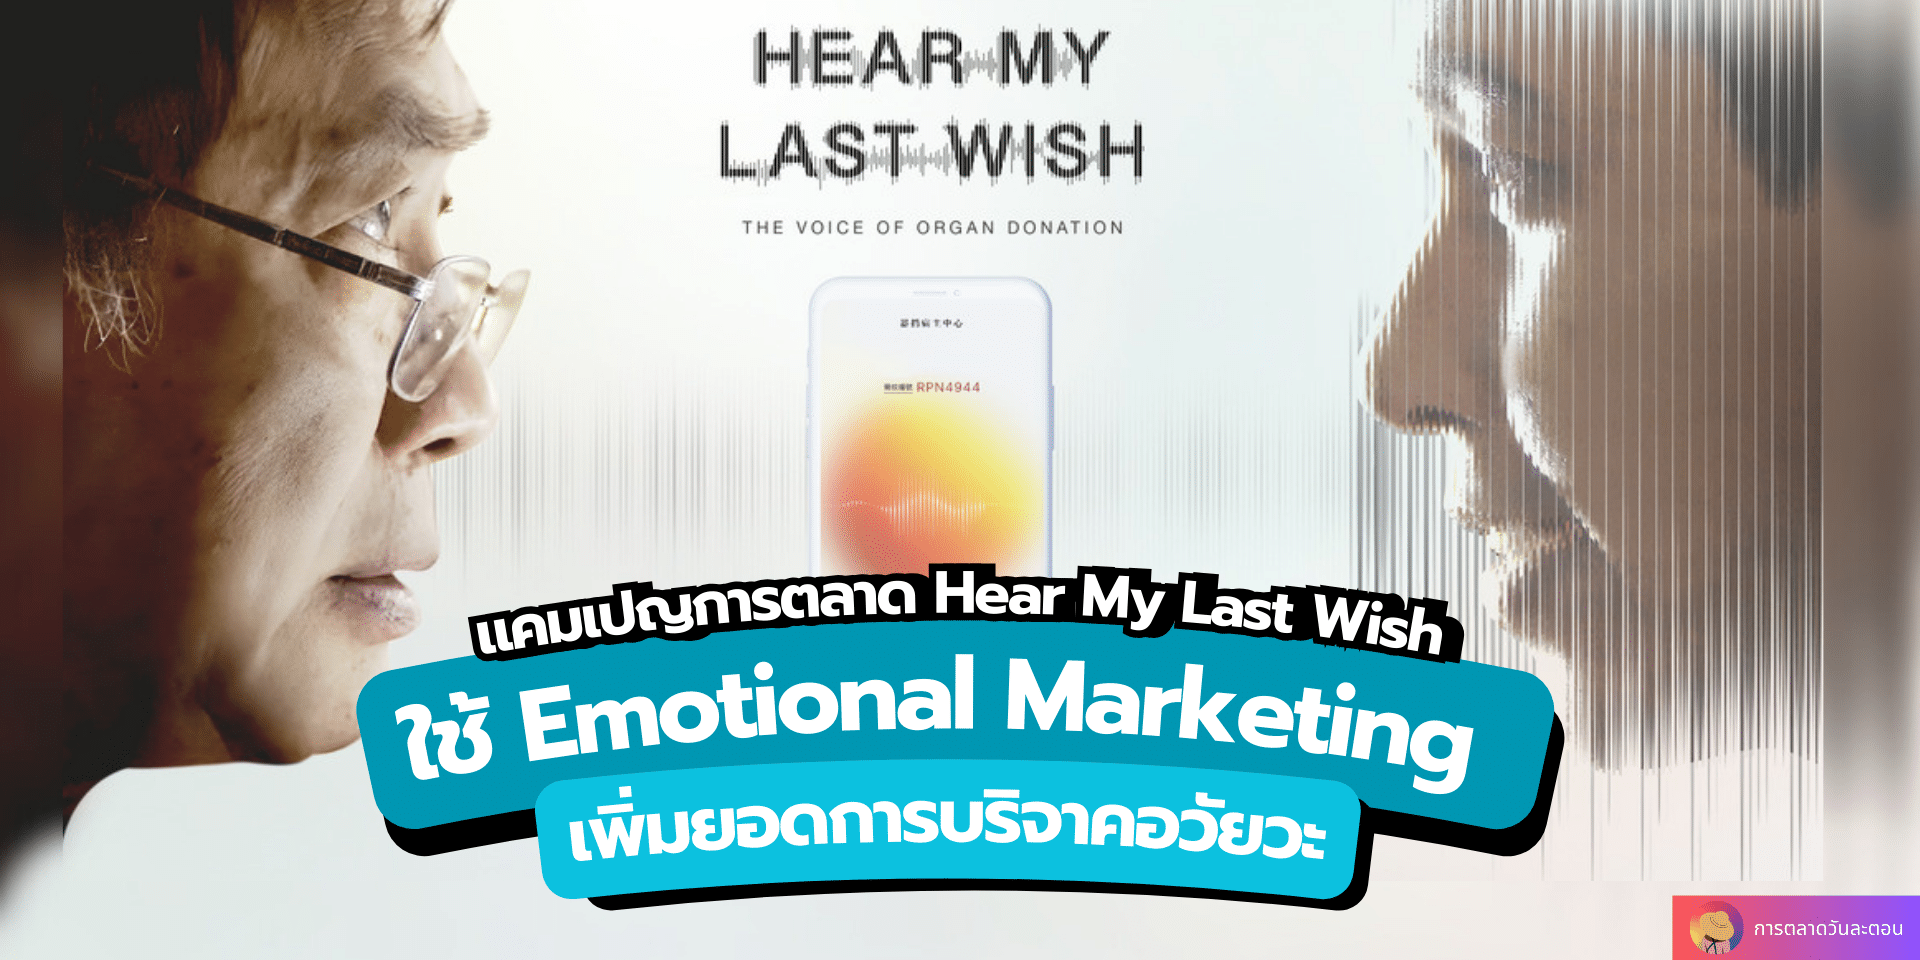 แคมเปญการตลาด Hear My Last Wish ใช้ Emotional Marketing เพิ่มยอดการบริจาคอวัยวะ